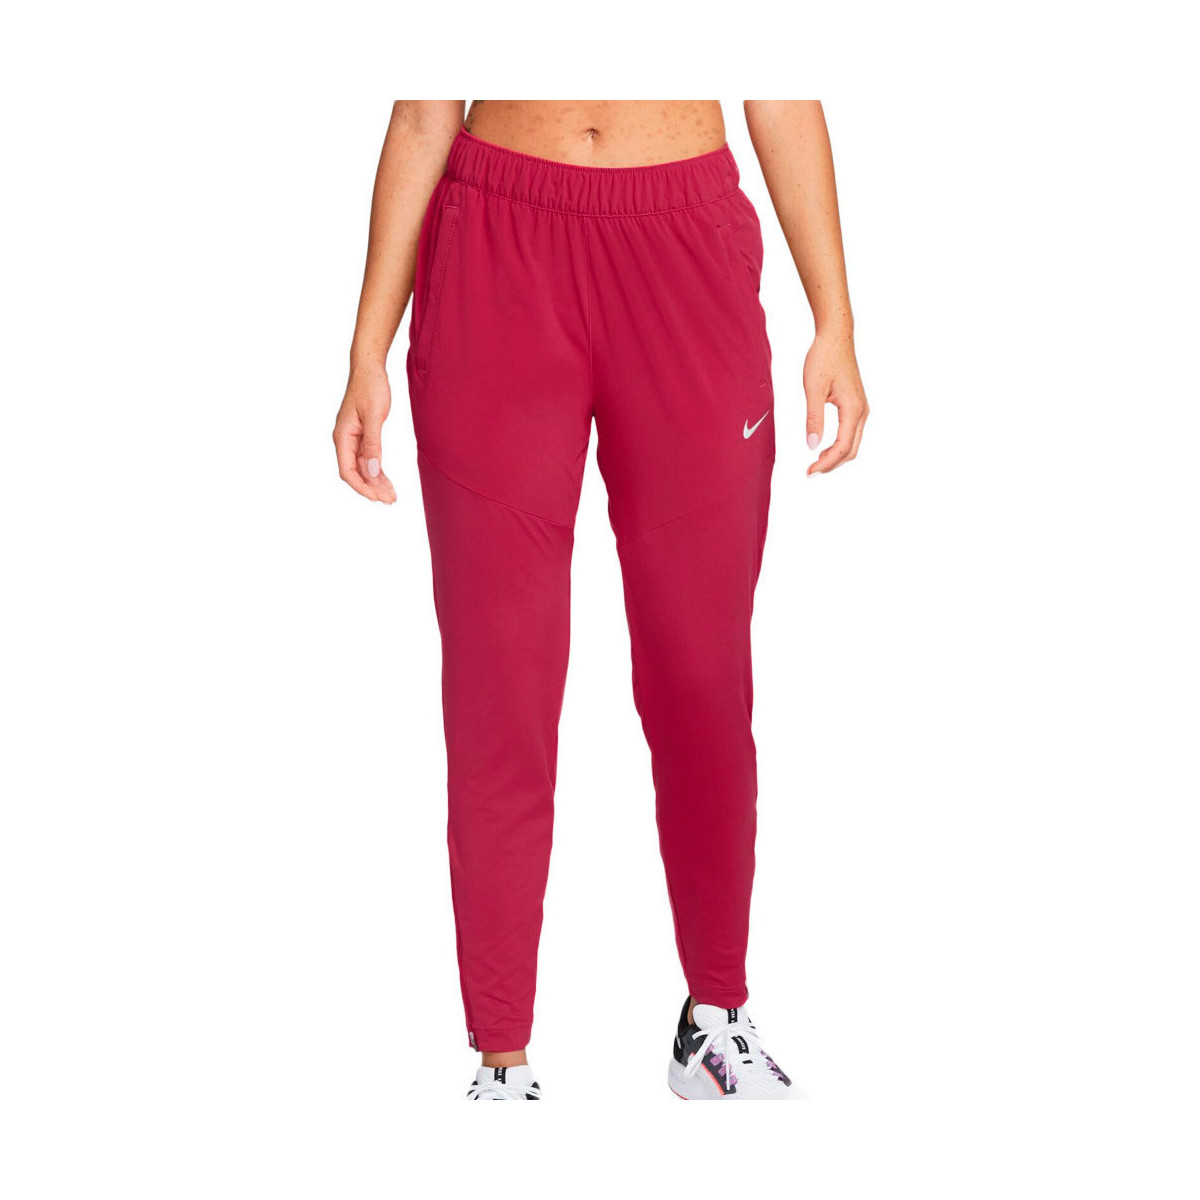 Textiel Dames Trainingsbroeken Nike  Rood